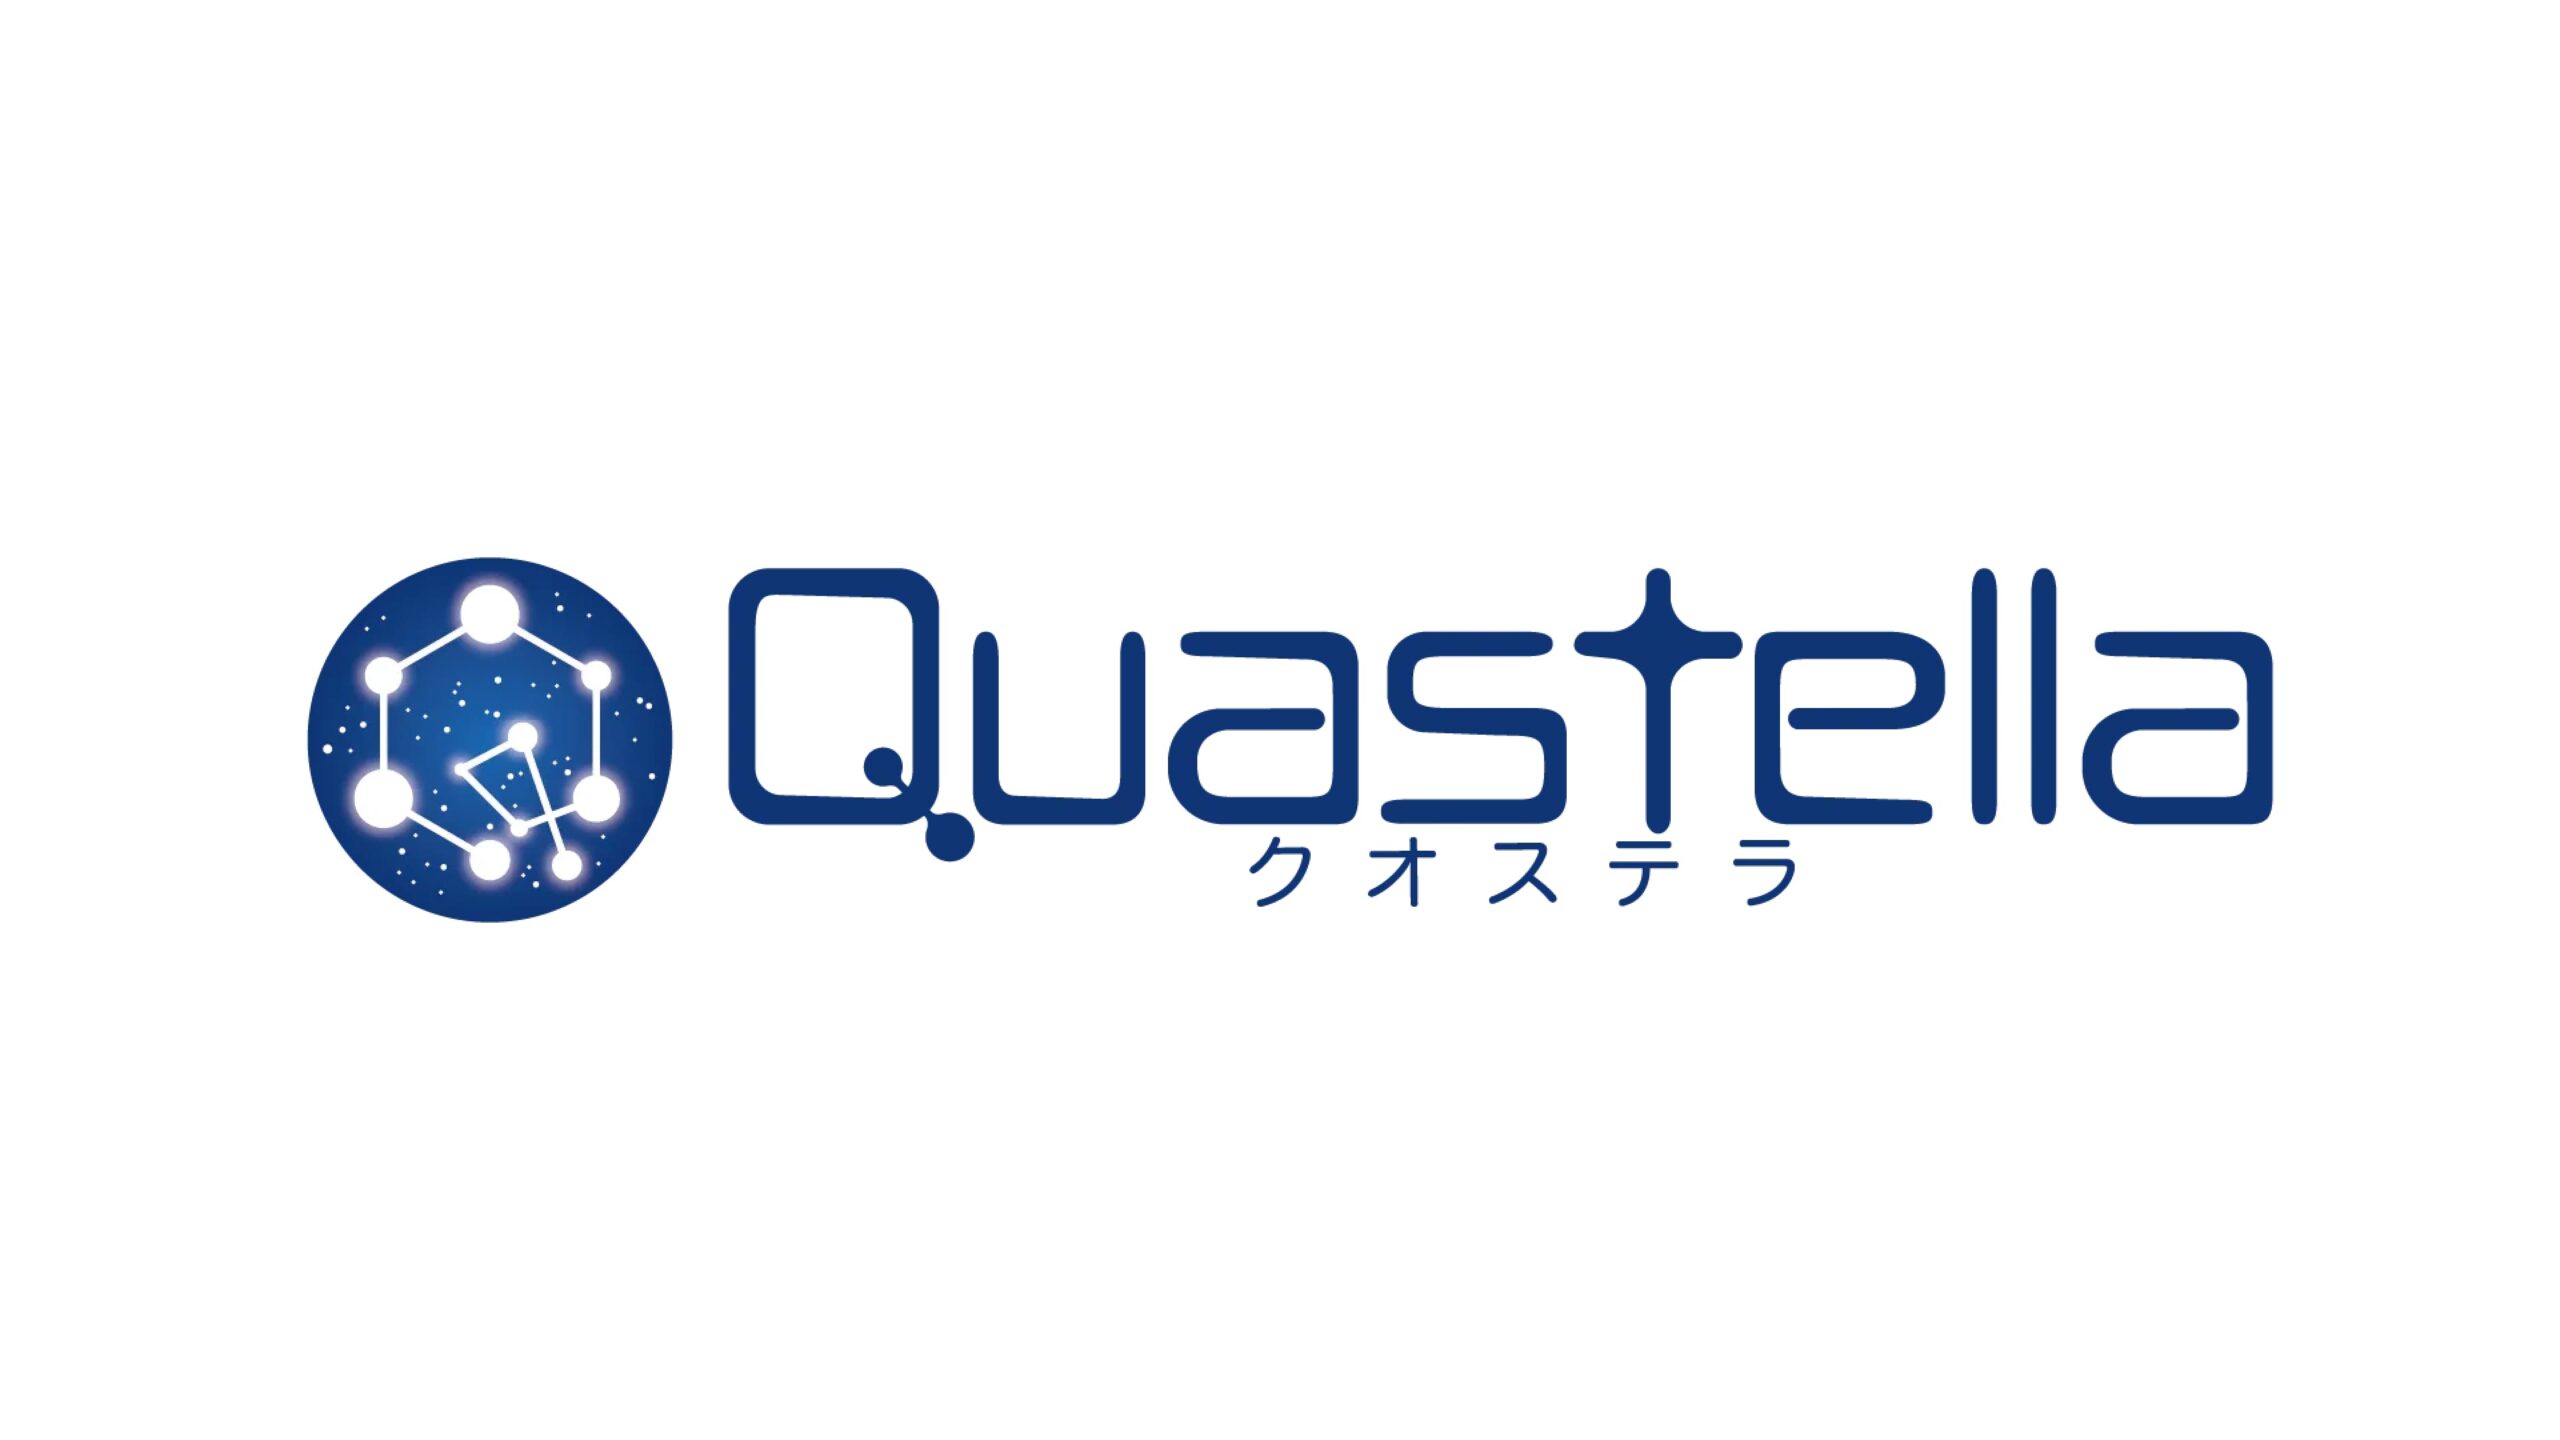 名古屋大学発ベンチャーの株式会社Quastellaが資金調達を実施